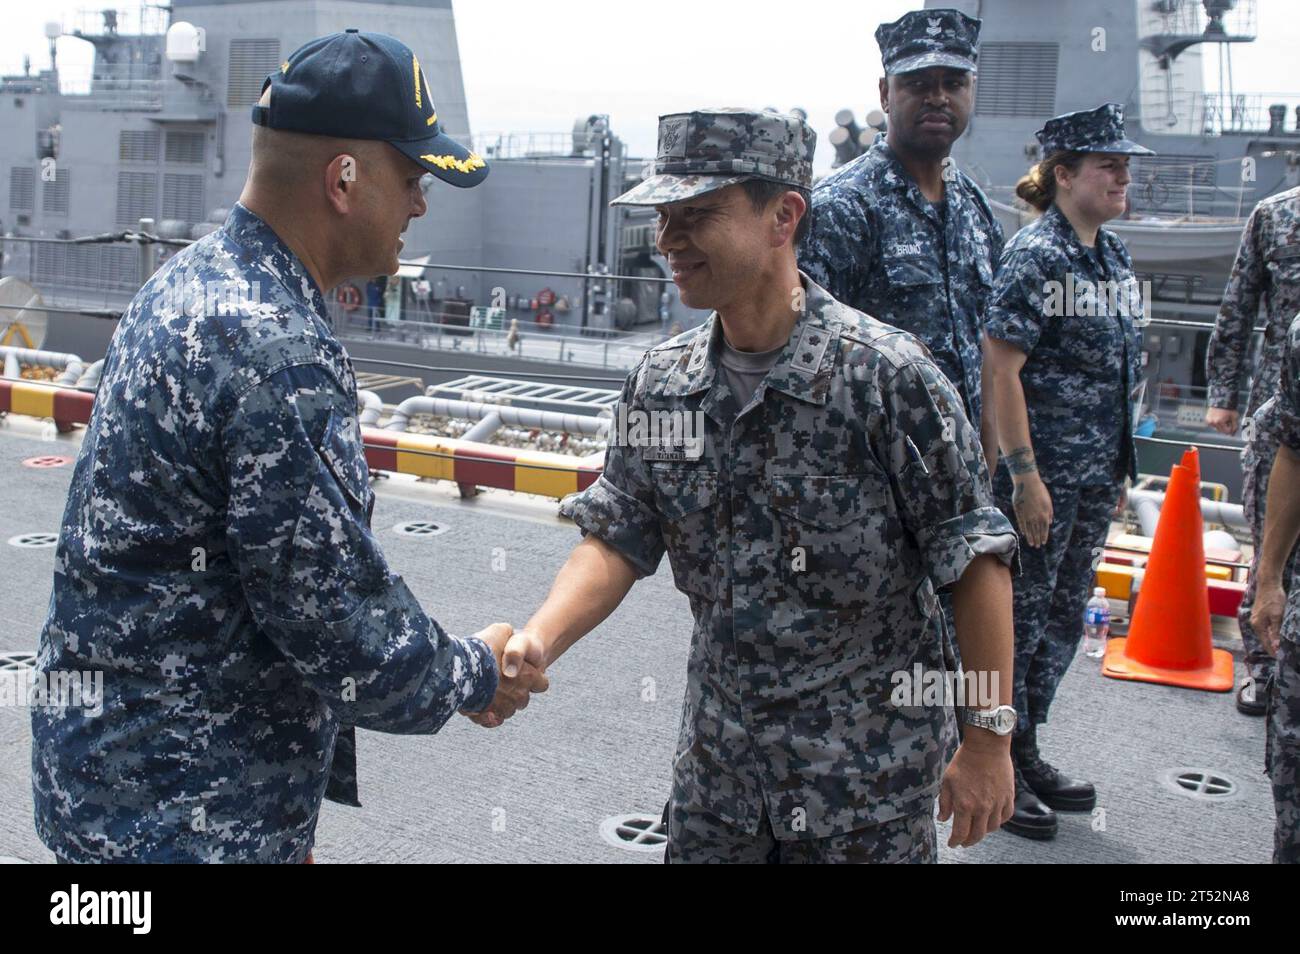 170605XT039-1035 OKINAWA, Japon (6 juin 2017) le capitaine George Doyon, à gauche, commandant de l'escadron amphibie 11, accueille le major général Hiroshi Watanabe, vice-commandant de la division aérienne composite sud-ouest de la Force aérienne japonaise d'autodéfense (JASDF), et des membres de la JASDF pour une tournée à bord du navire d'assaut amphibie USS Bonhomme Richard (LHD 6). Bonhomme Richard, navire amiral du Bonhomme Richard Amphibious Ready Group, effectue une patrouille de routine, opérant dans la région Indo-Asie-Pacifique pour servir de capacité avancée pour tout type de contingence. Marine Banque D'Images